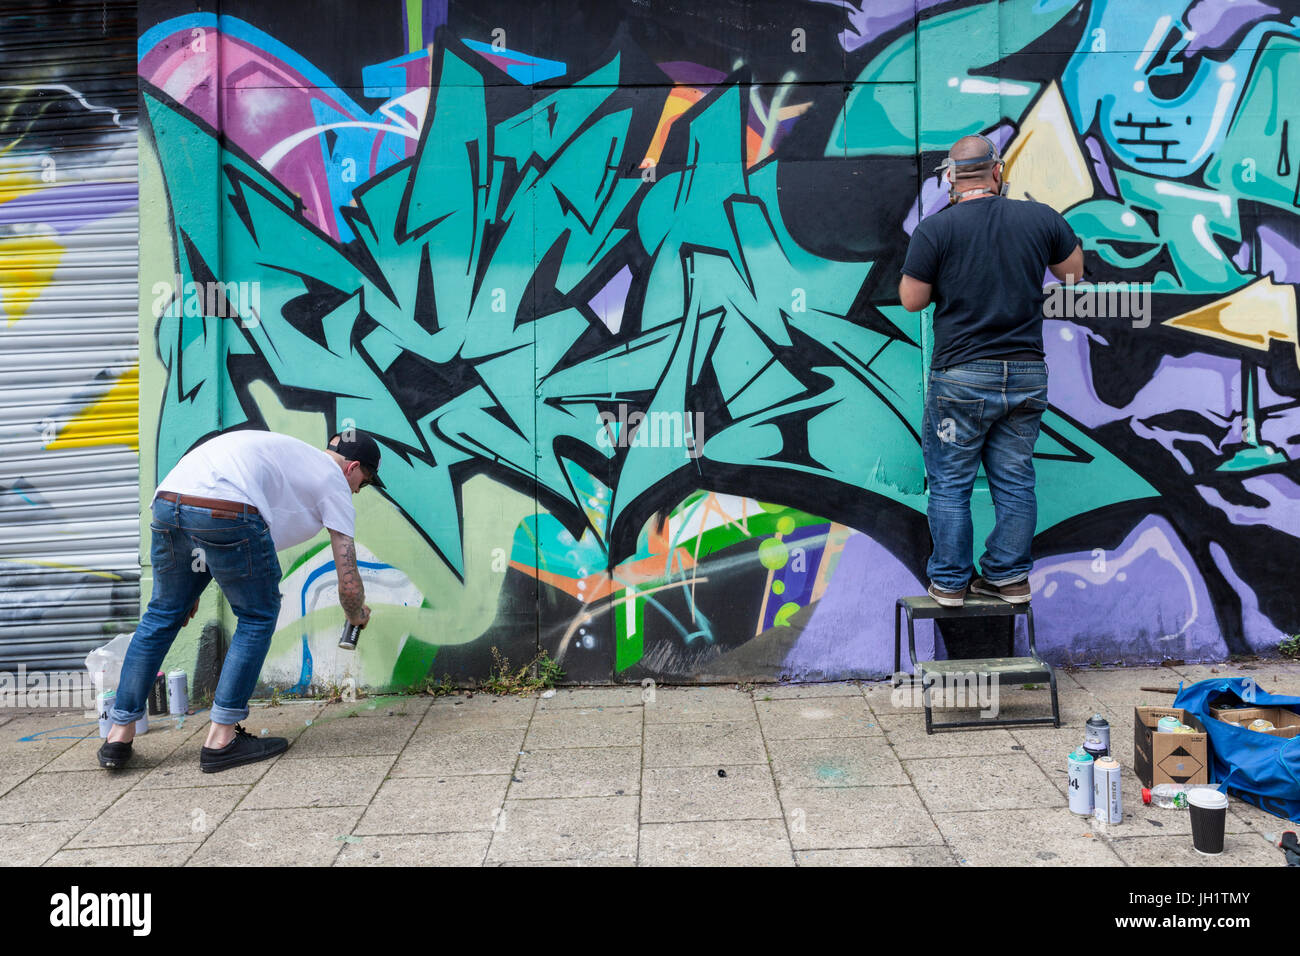 Graffiti artists painting a wall, Nottingham, England, UK Stock Photo